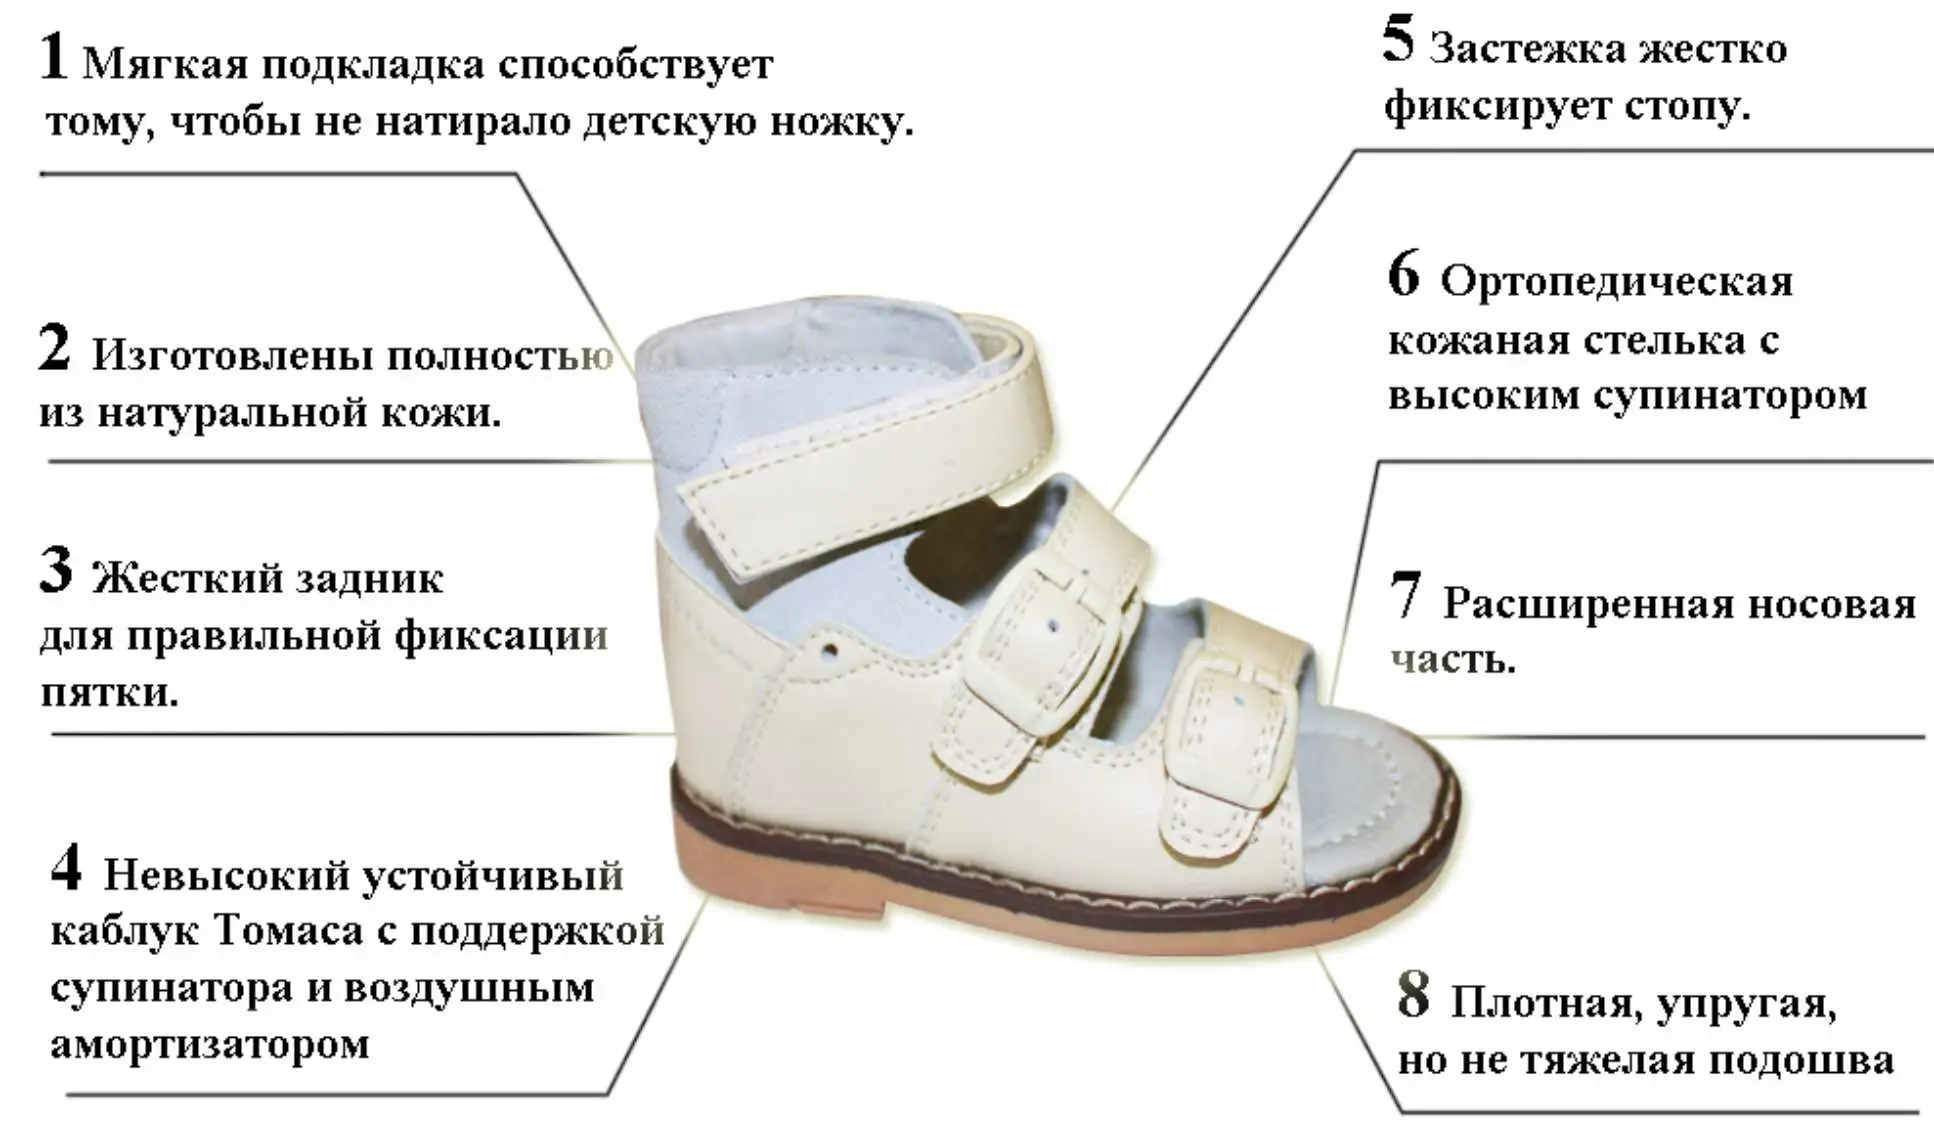 Сандали как правильно. Ортопедическая обувь для детей при вальгусной деформации. Обувь при вальгусной деформации стопы у детей 1 год. Ортопедическая обувь при плосковальгусной стопе. Обувь при вальгусной деформации стопы у детей 2-3.